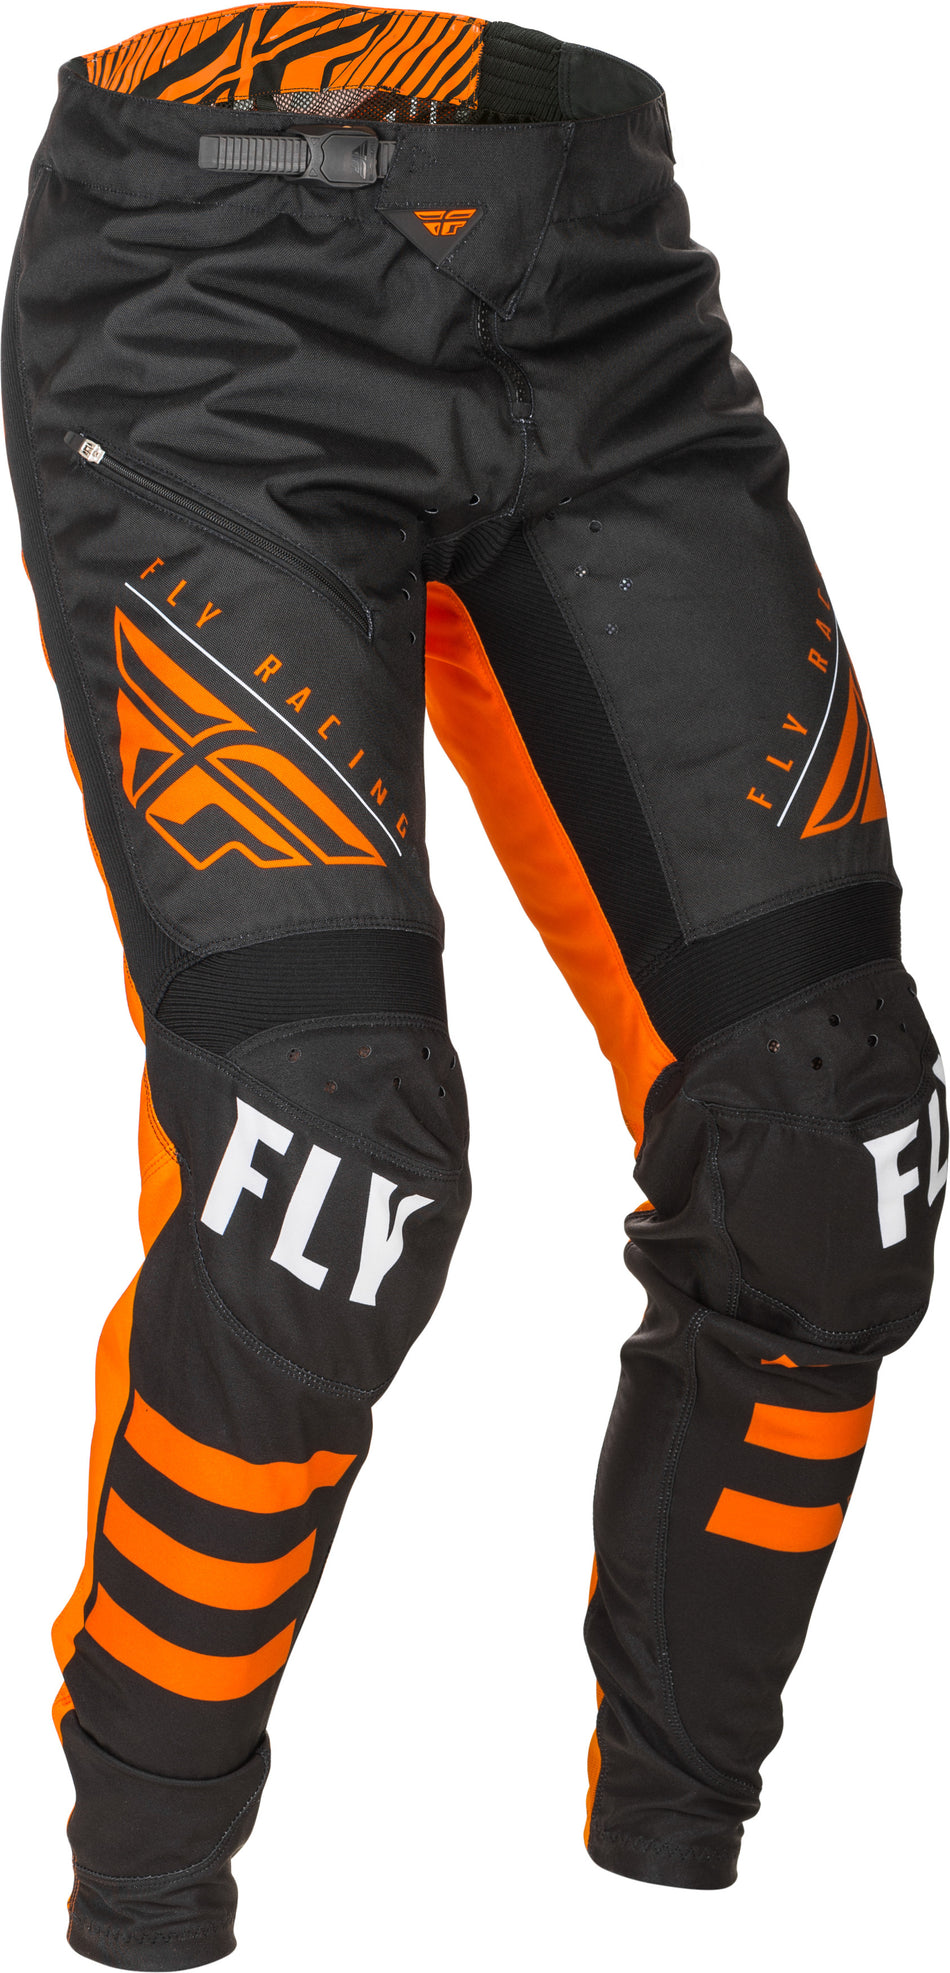 FLY RACING Kinetic Bicycle Pants Black/Orange Sz 34 373-04734